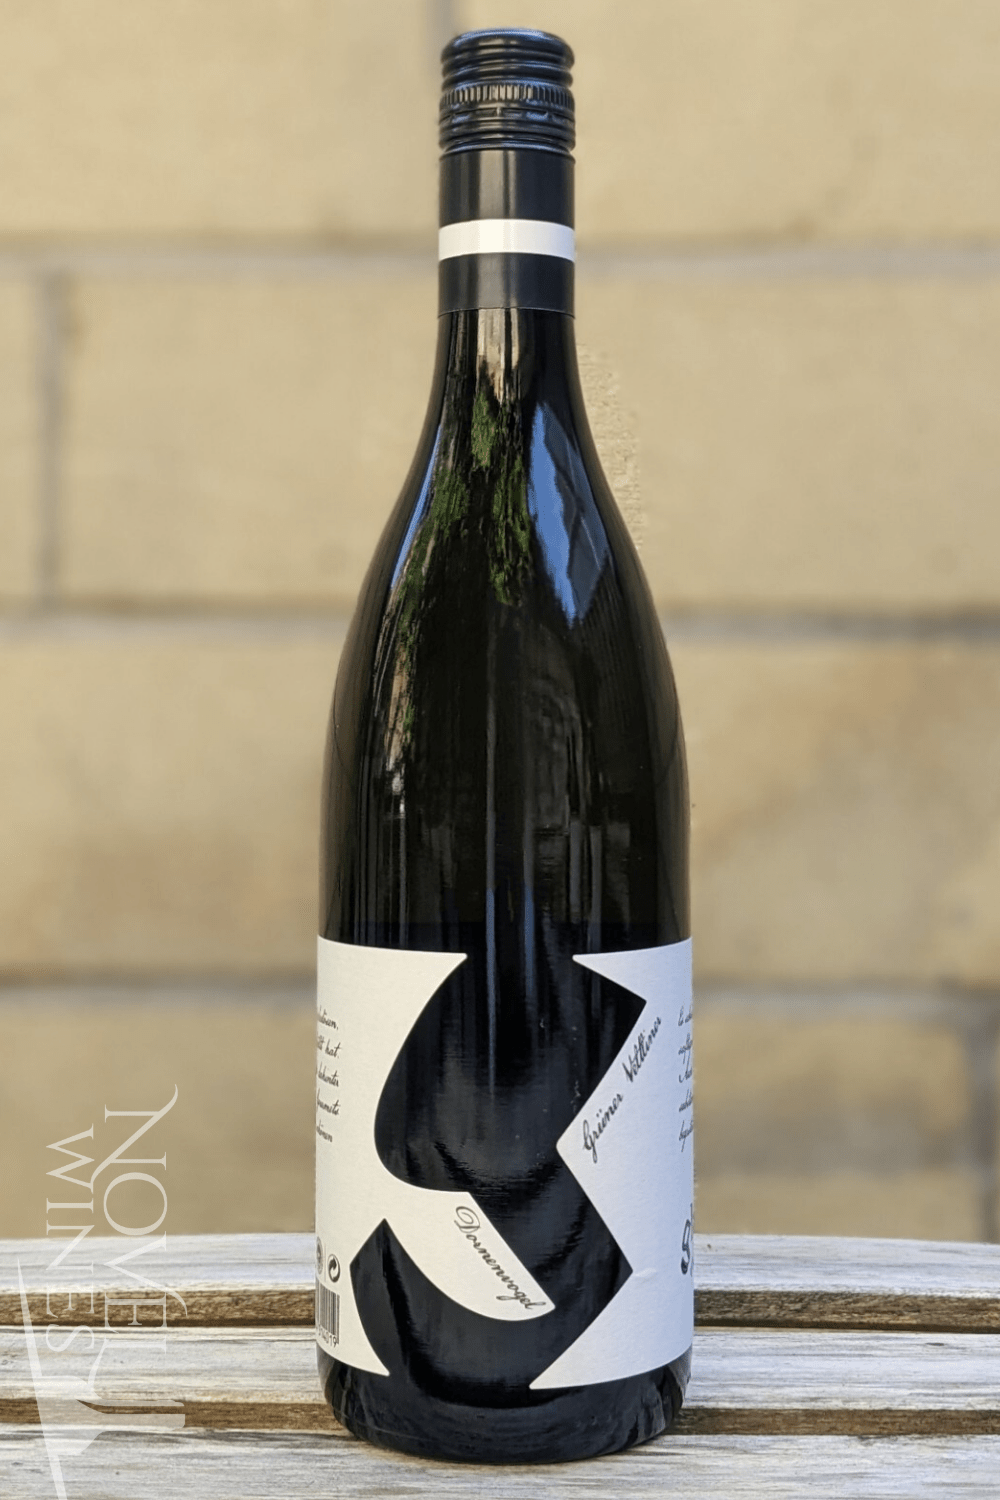 Glatzer White Wine Walter Glatzer Organic Gruner Veltliner "Dornenvogel" Carnuntum DAC 2021, Austria